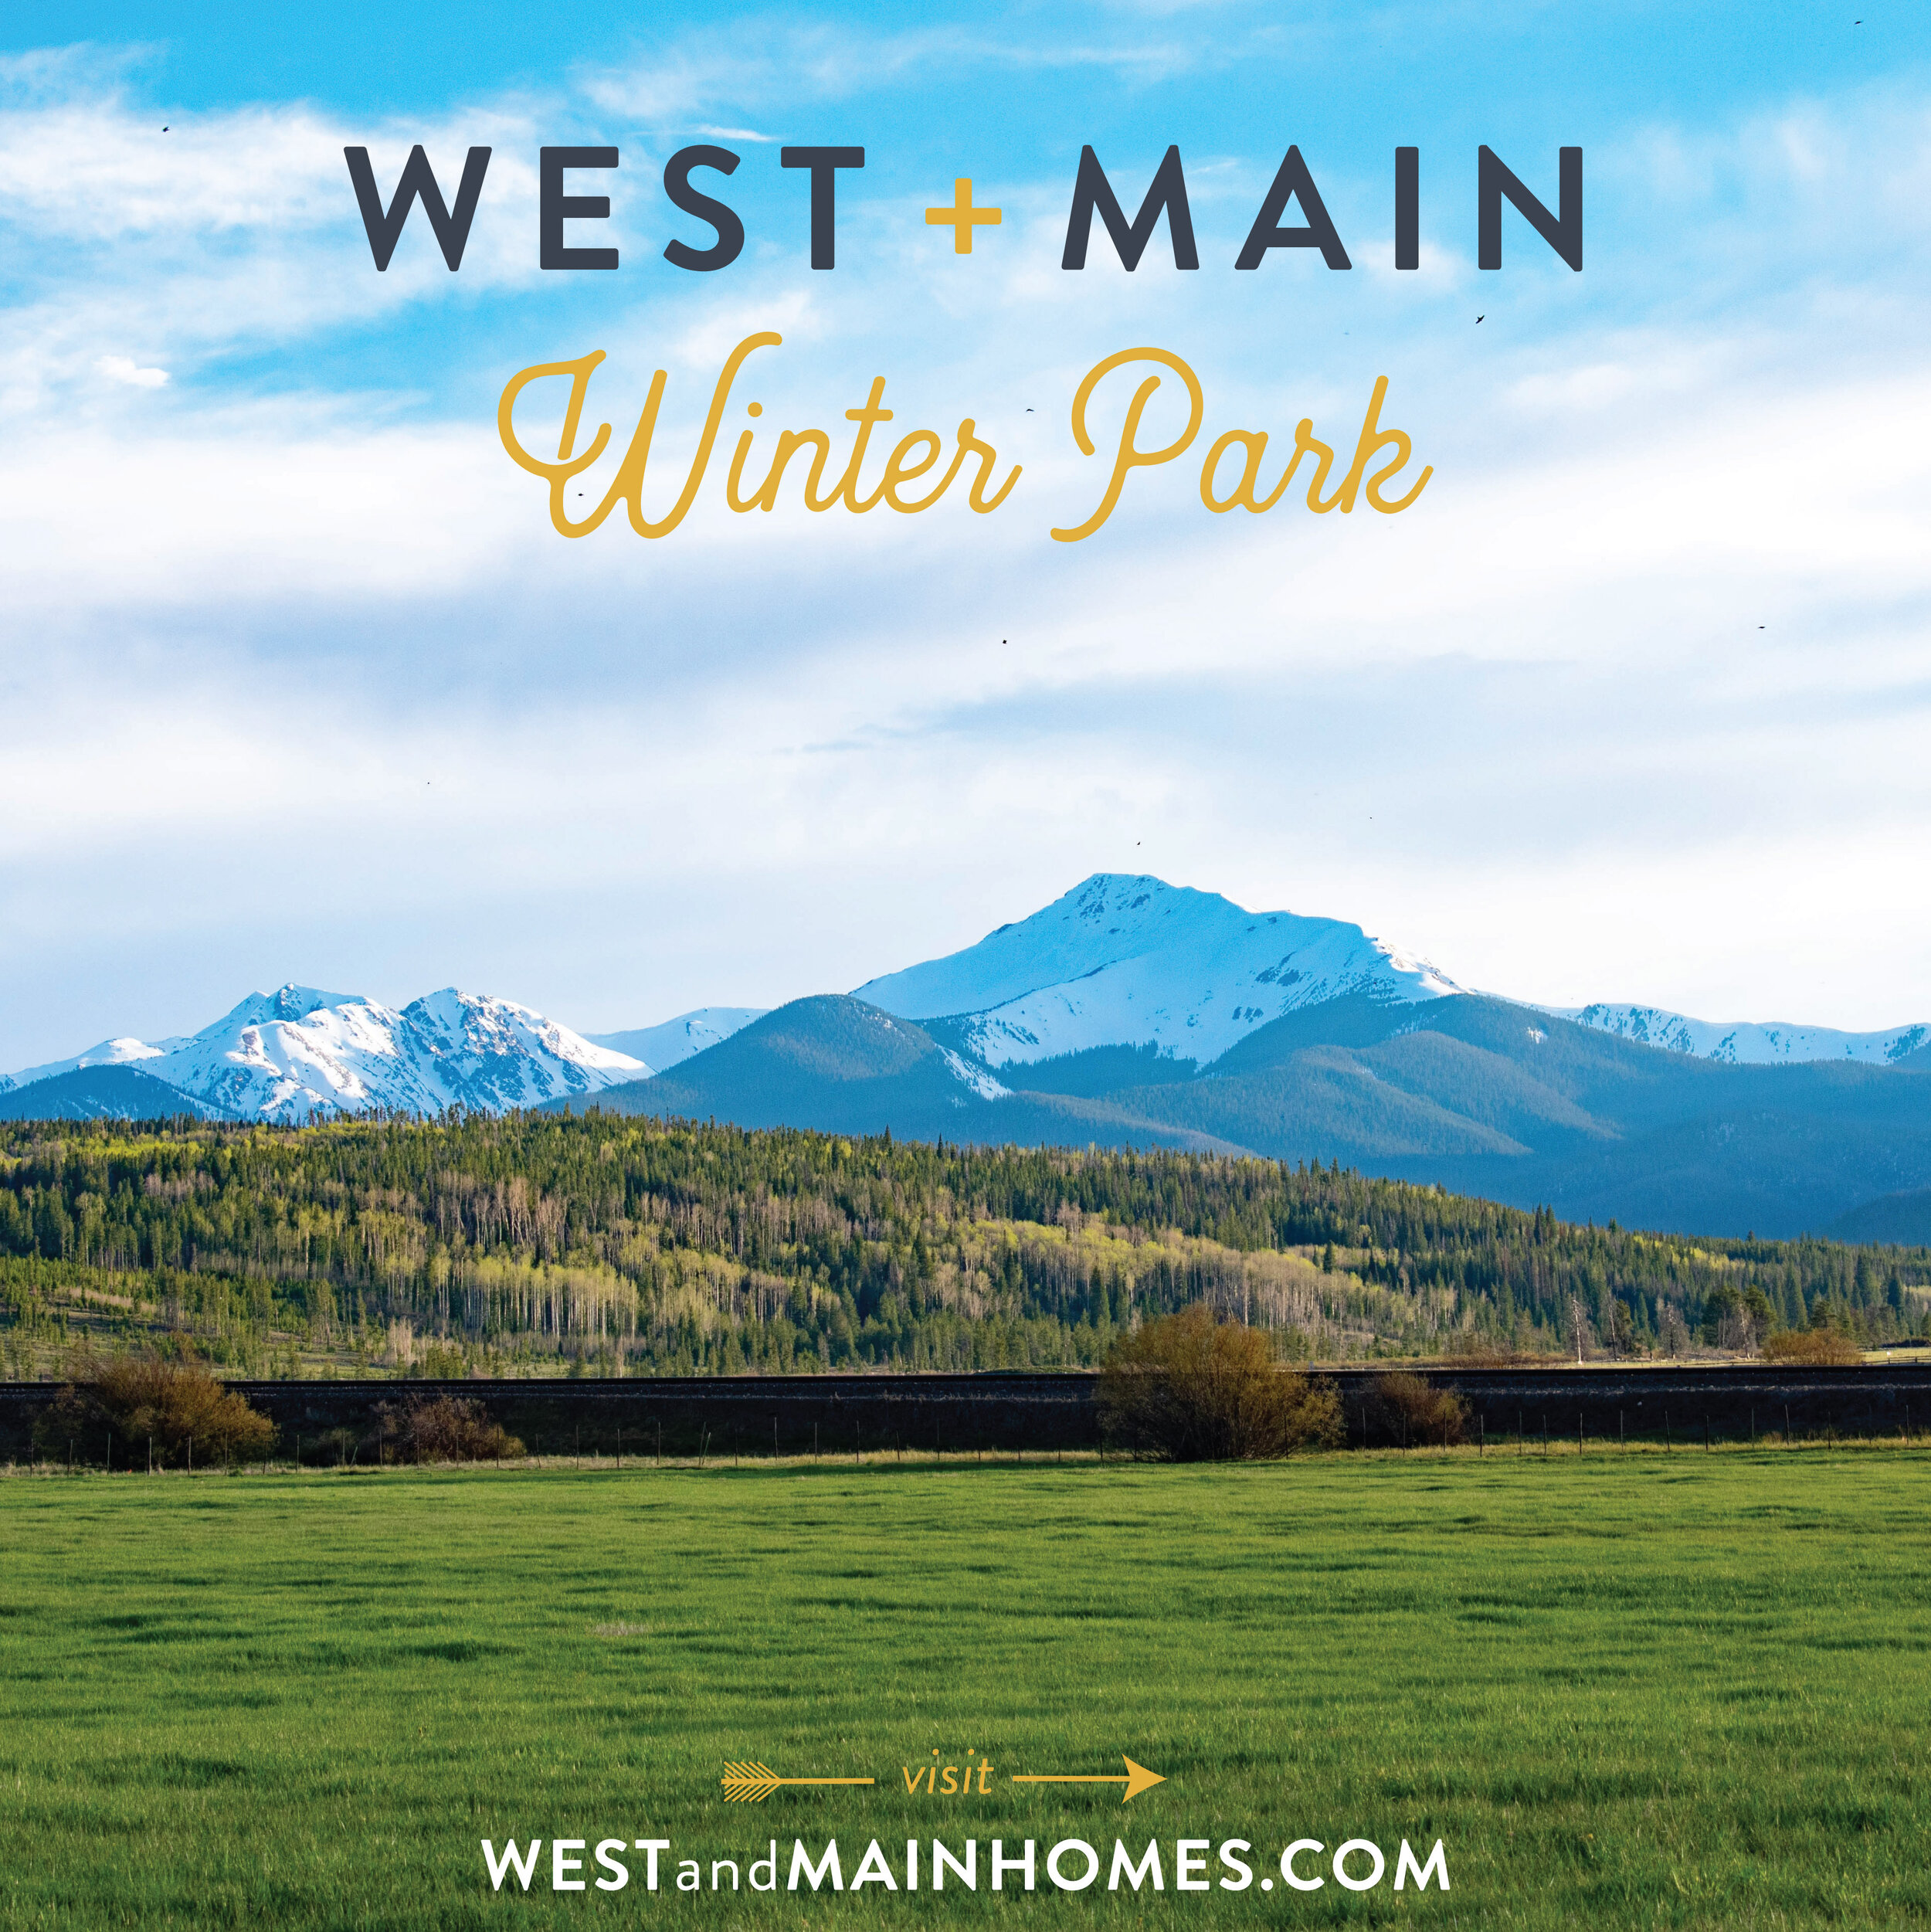 Winter - Prairie West